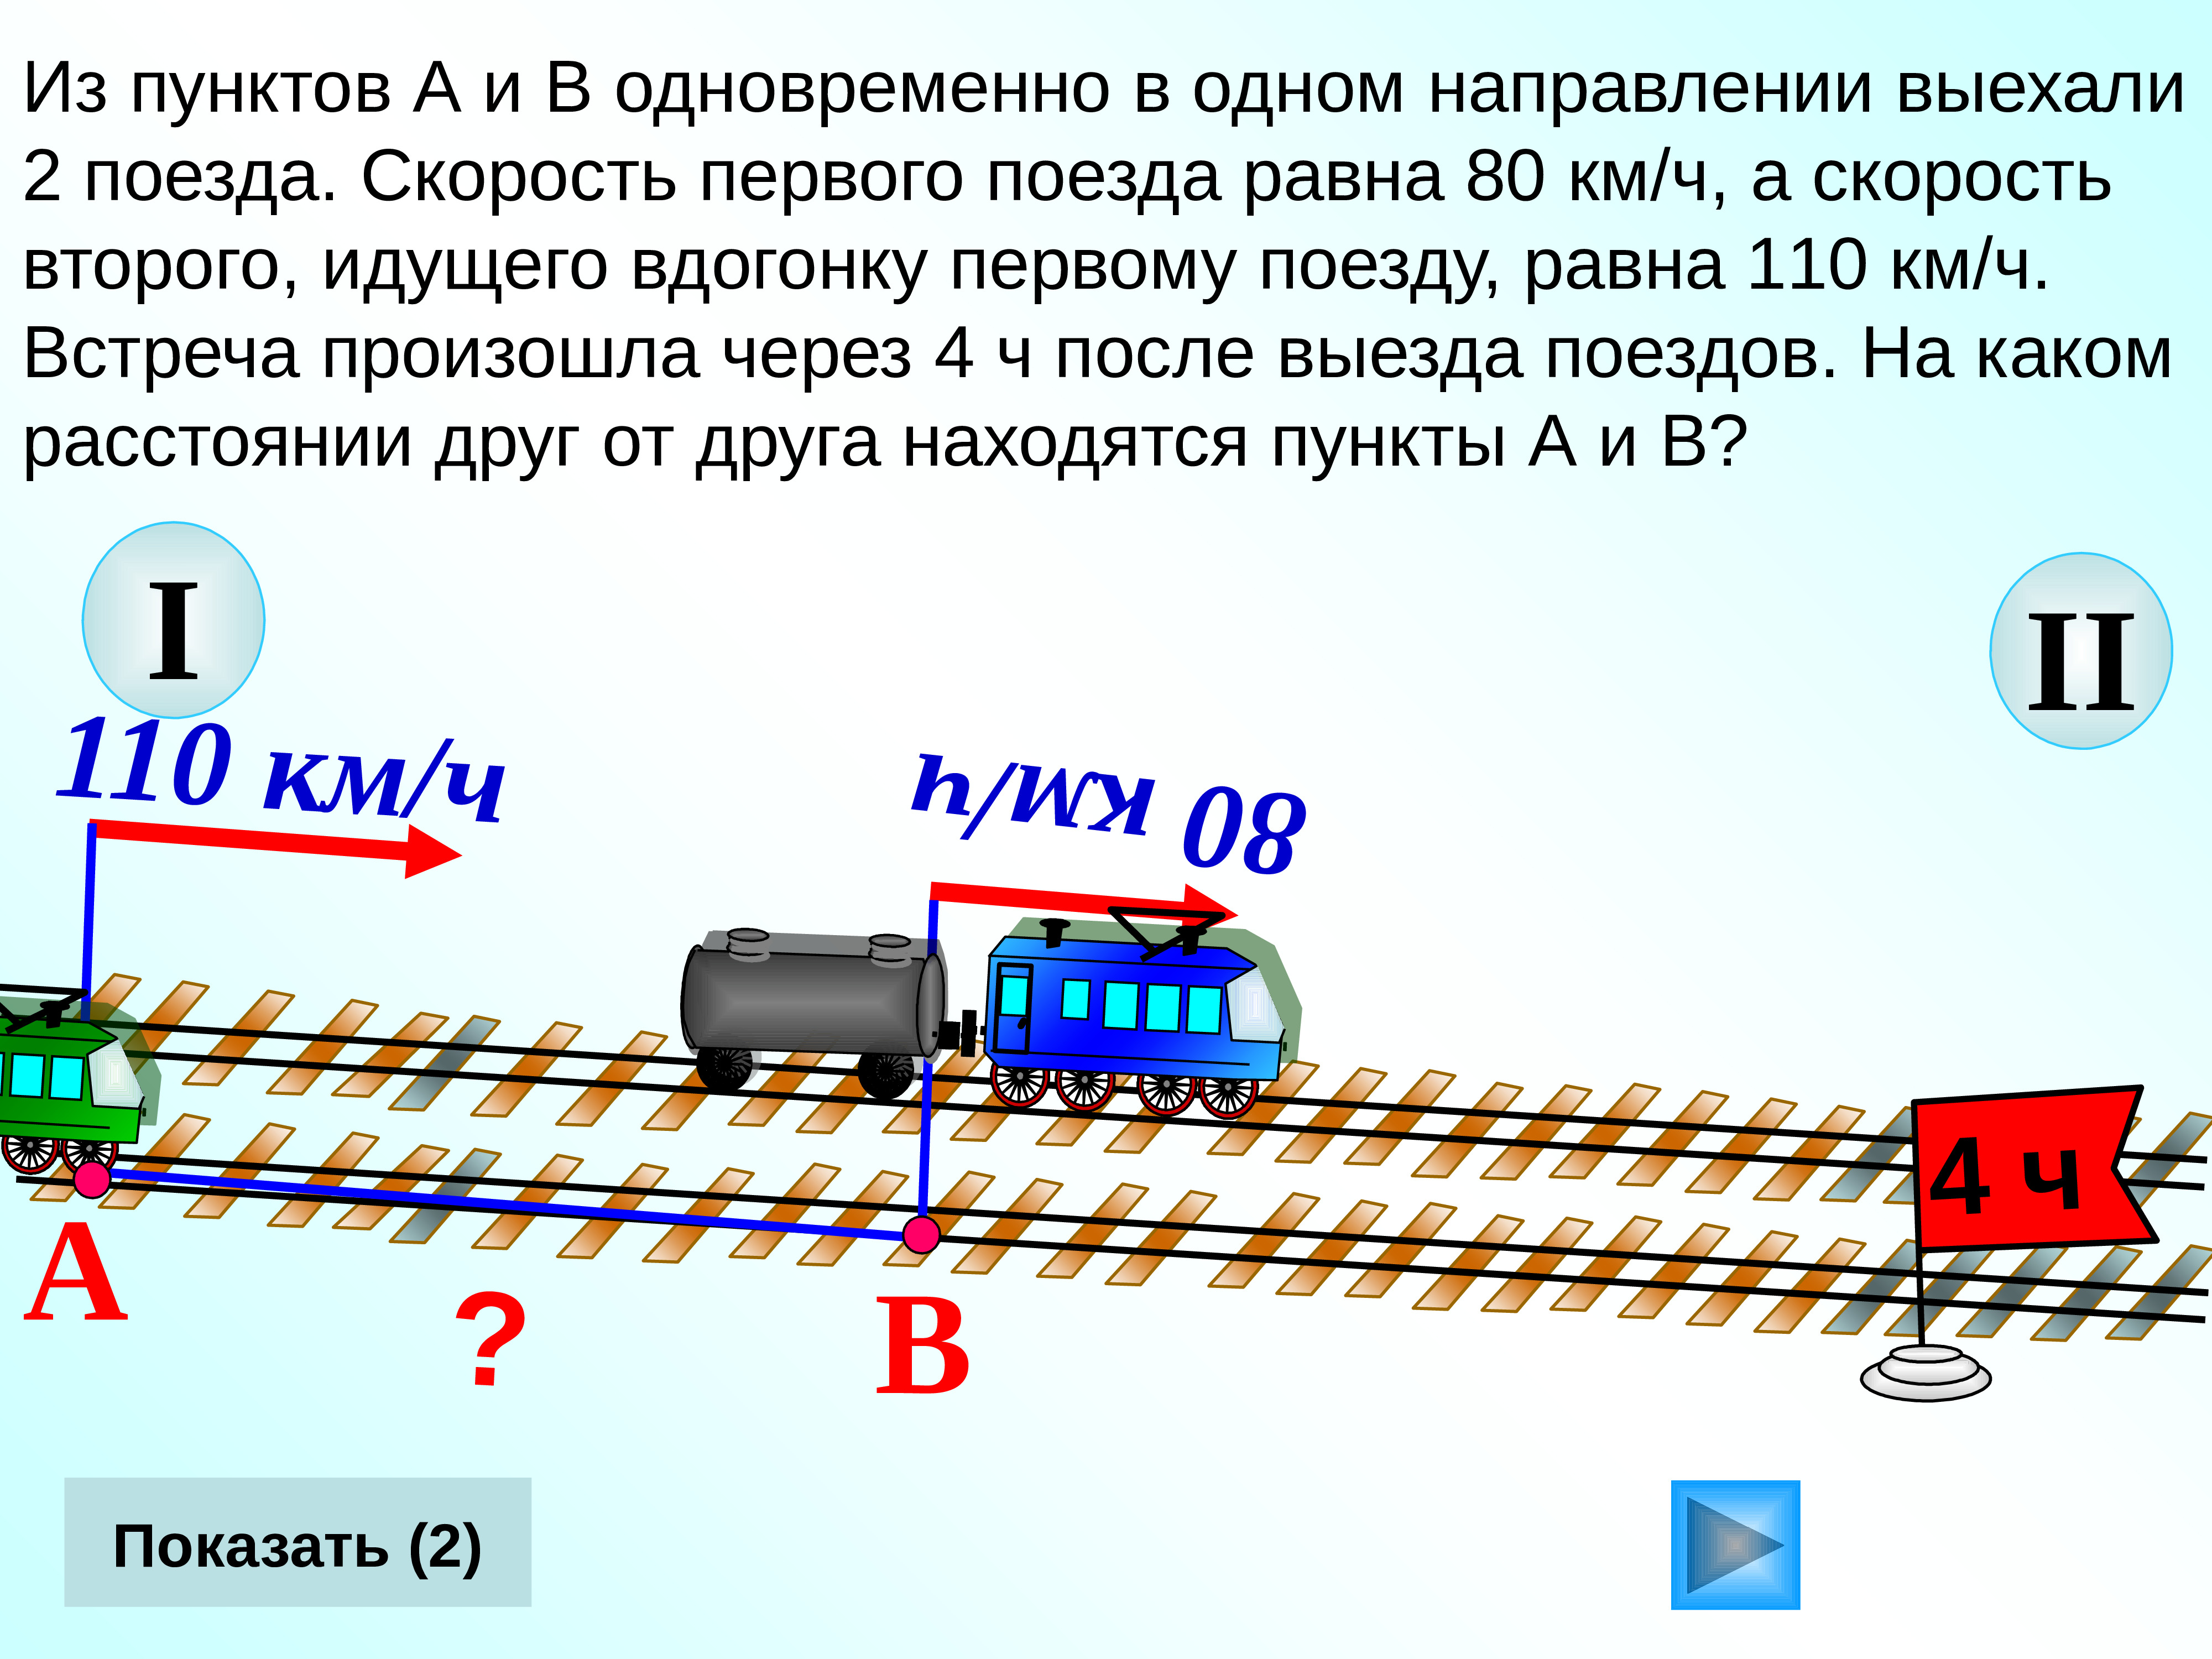 2 поезда выехали одновременно в 1 направлении. 2 Поезда в 1 направление. Два поезда выехали одновременно в одном направлении. В одном направлении. Из пункта а в пункт в.